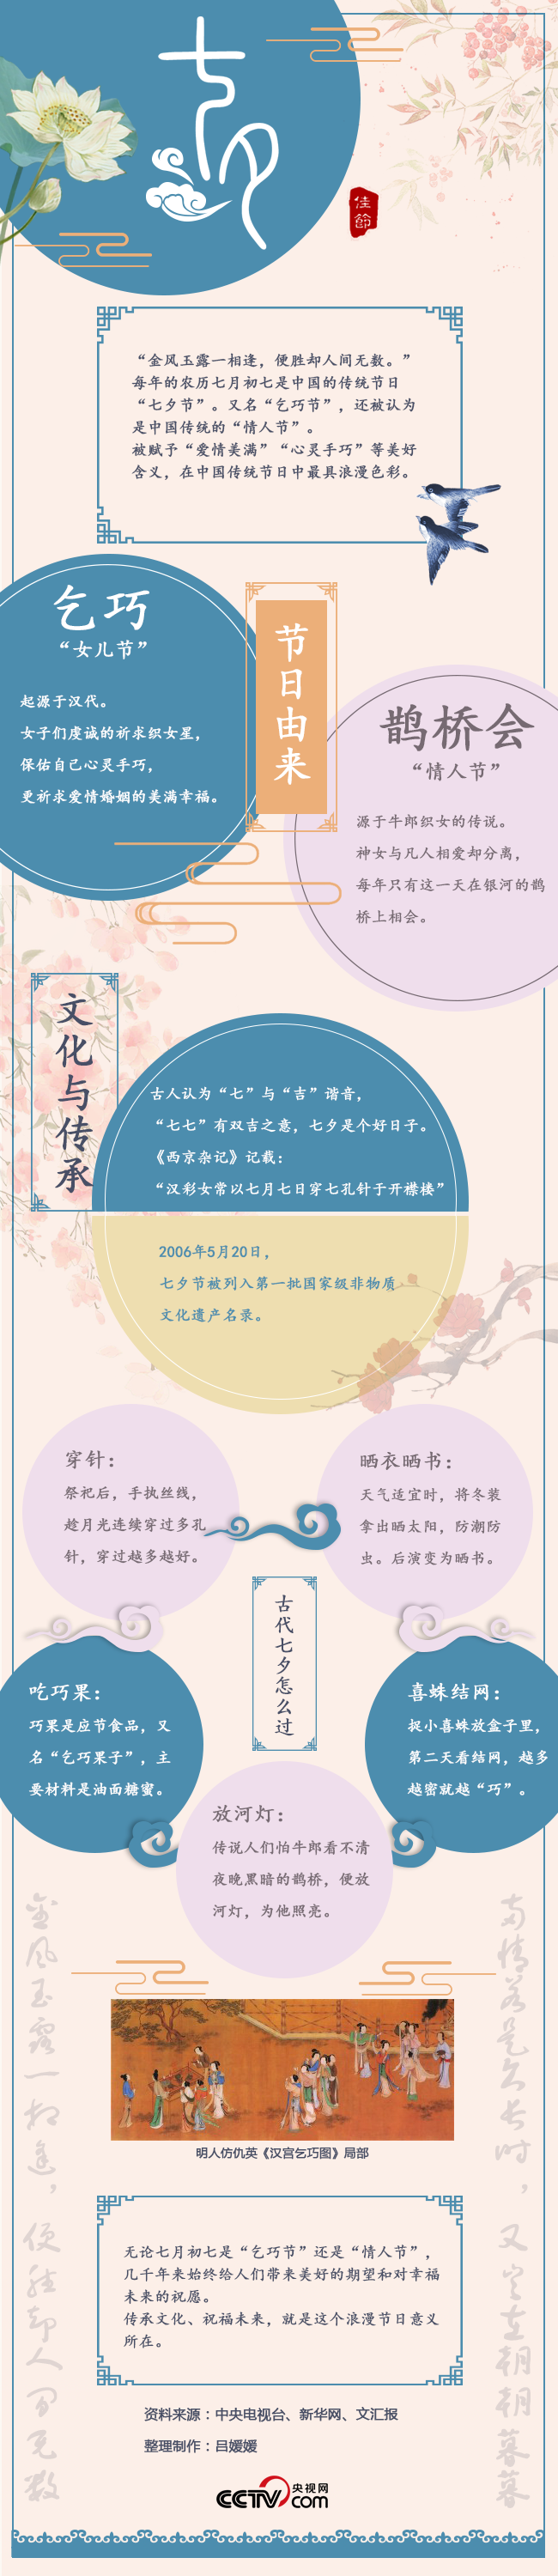 【图解】七夕节：“胜却人间无数” 浪漫与传统融合